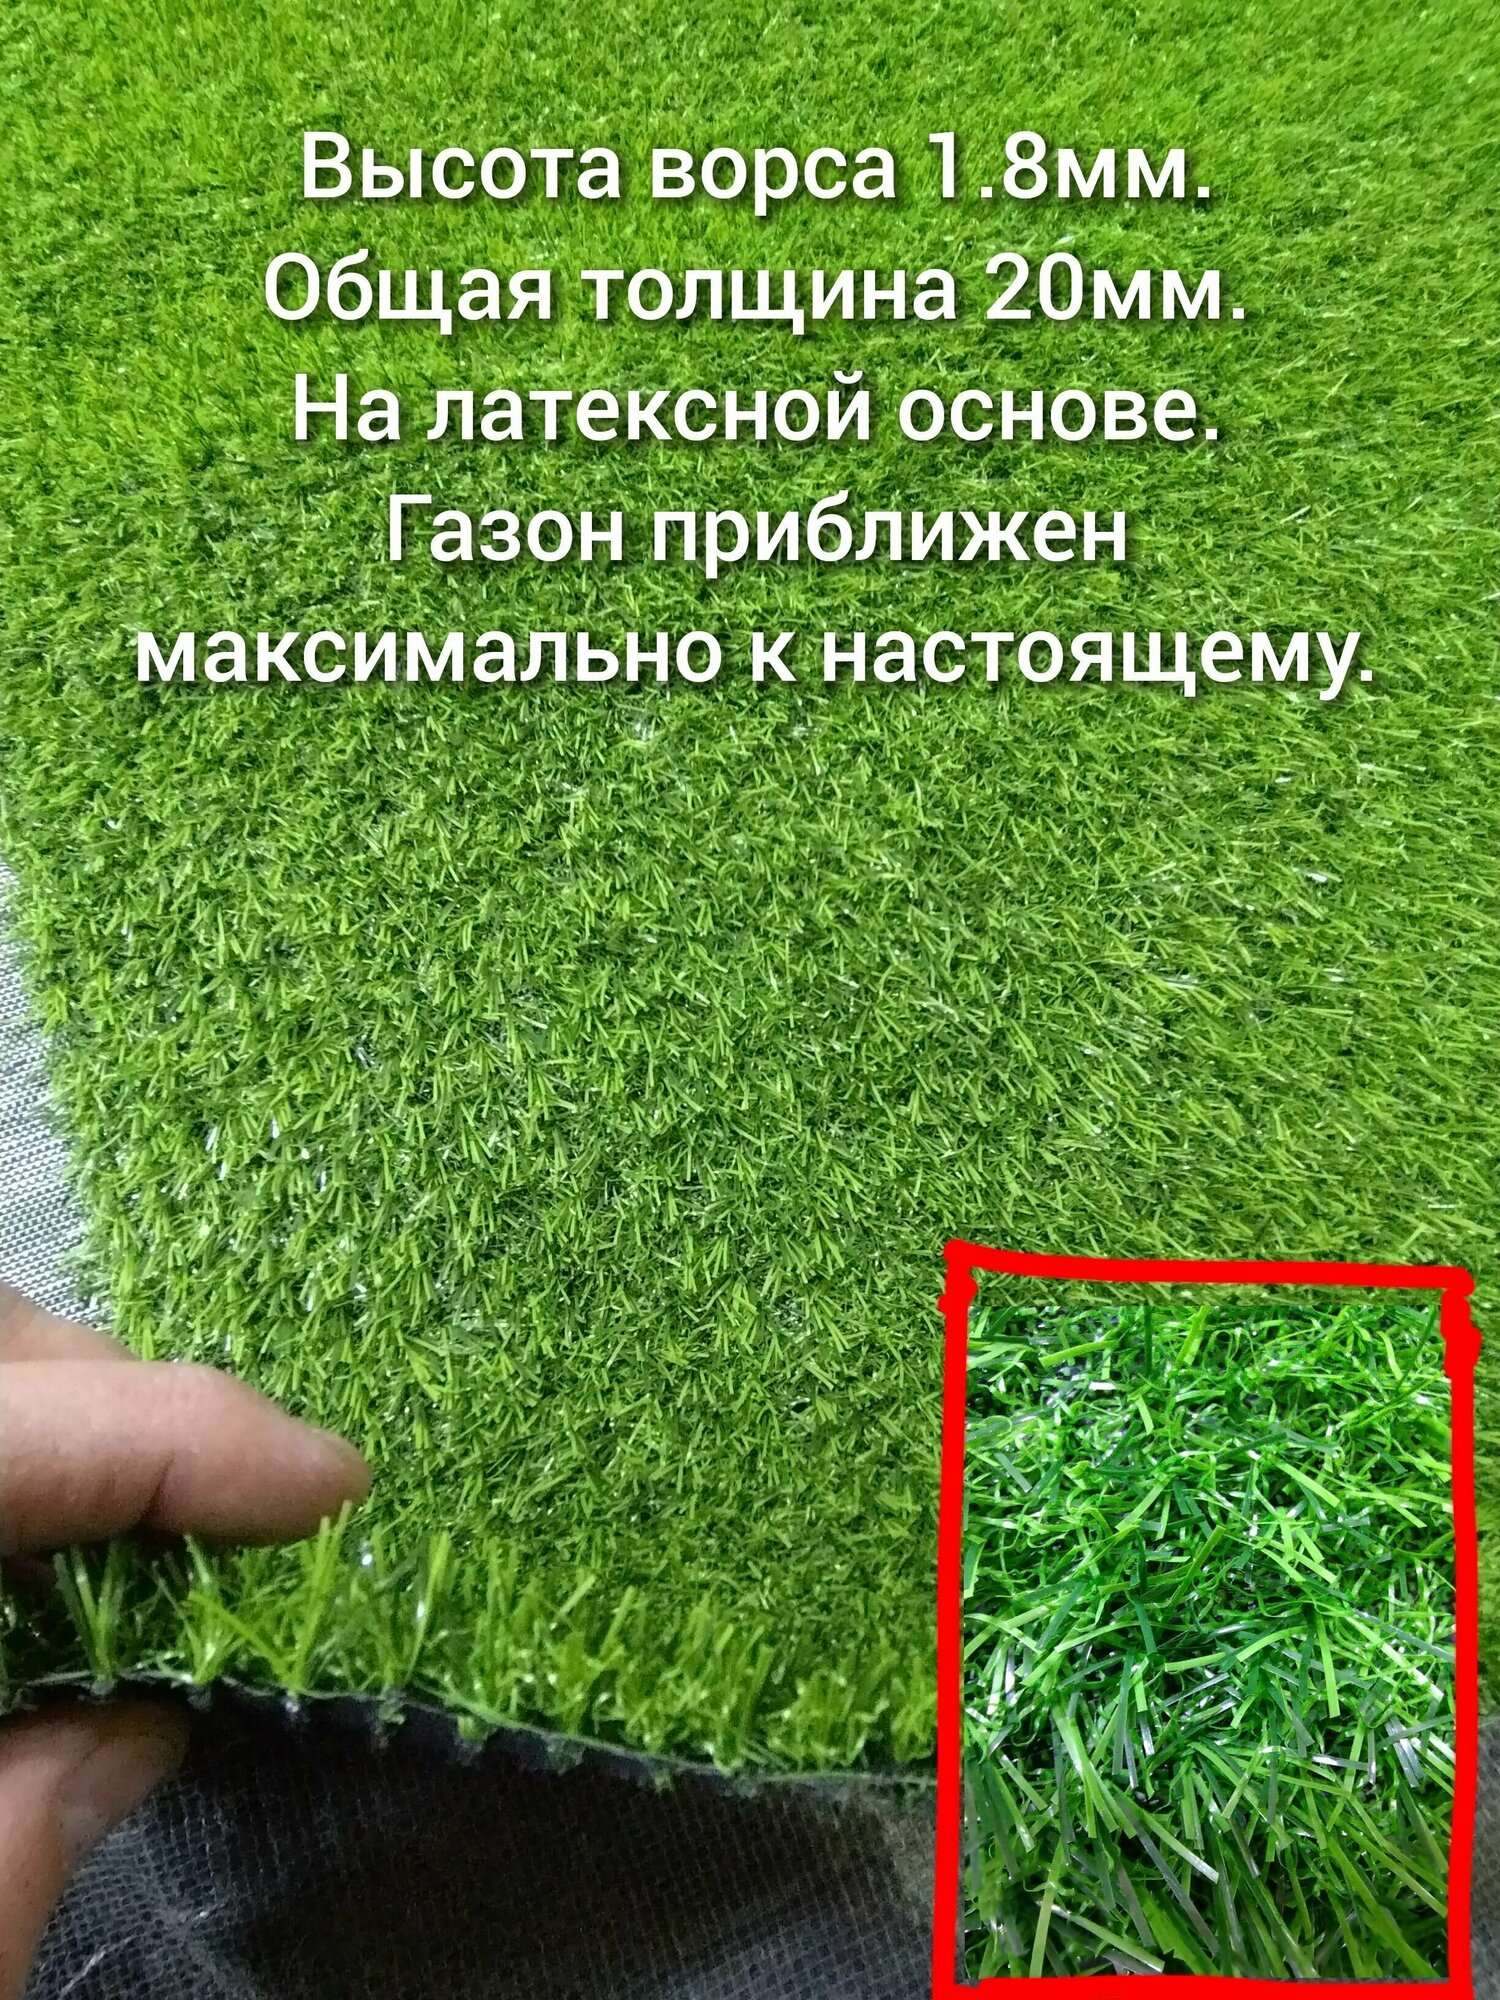 Газон искусственный 2 на 1 (высота ворса 18мм) искусственная трава с высоким ворсом, имитация настоящего газона